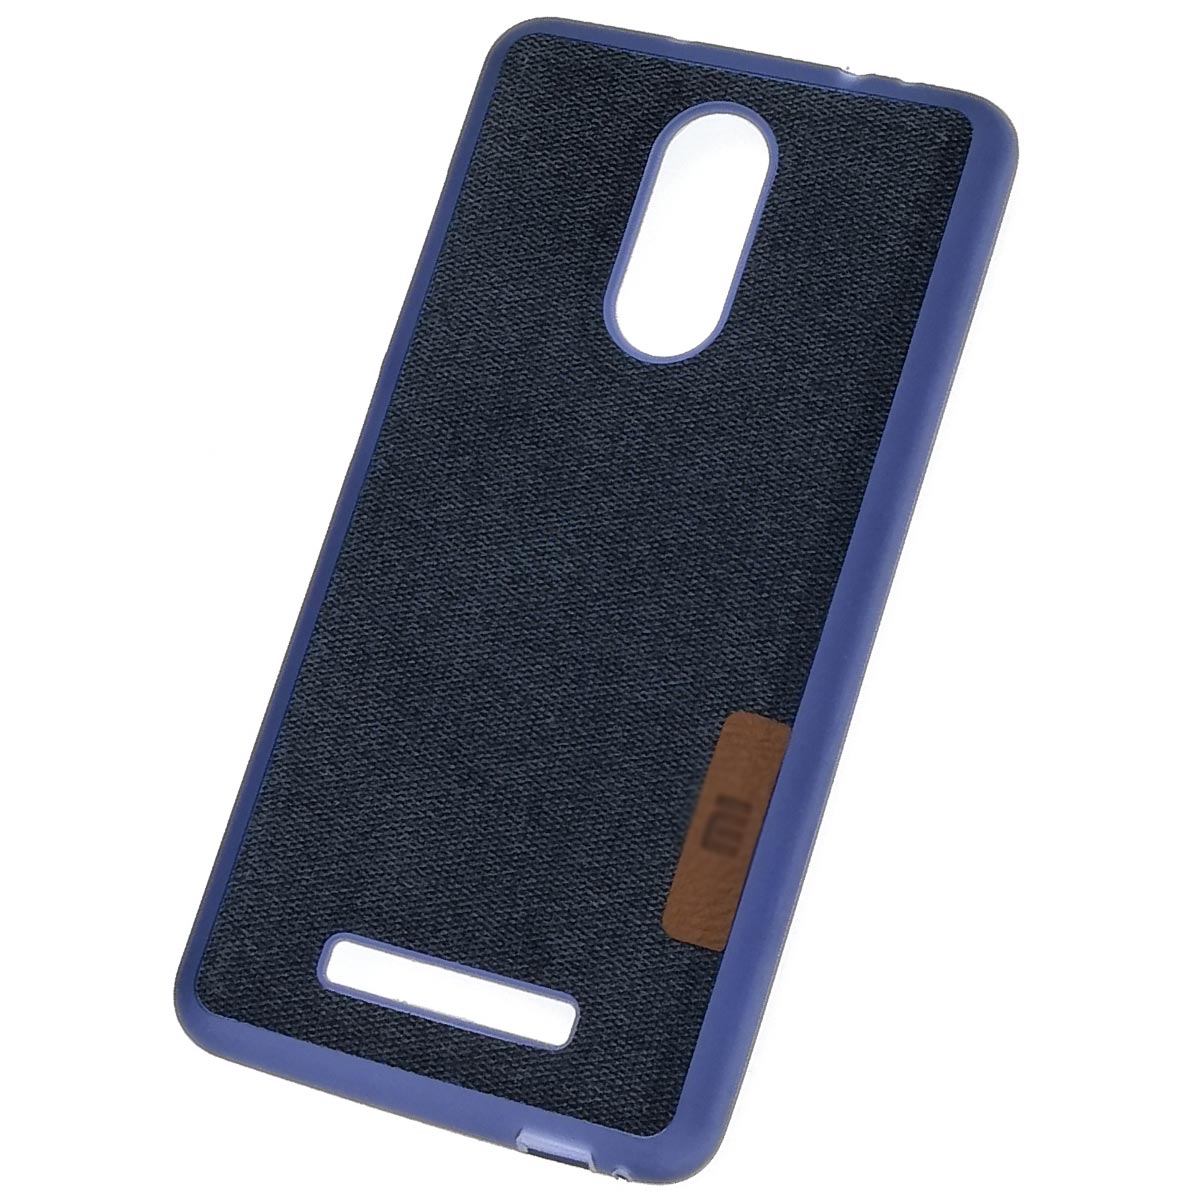 Чехол накладка для XIAOMI Redmi Note 3, силикон, плетение, экокожа, цвет синий.